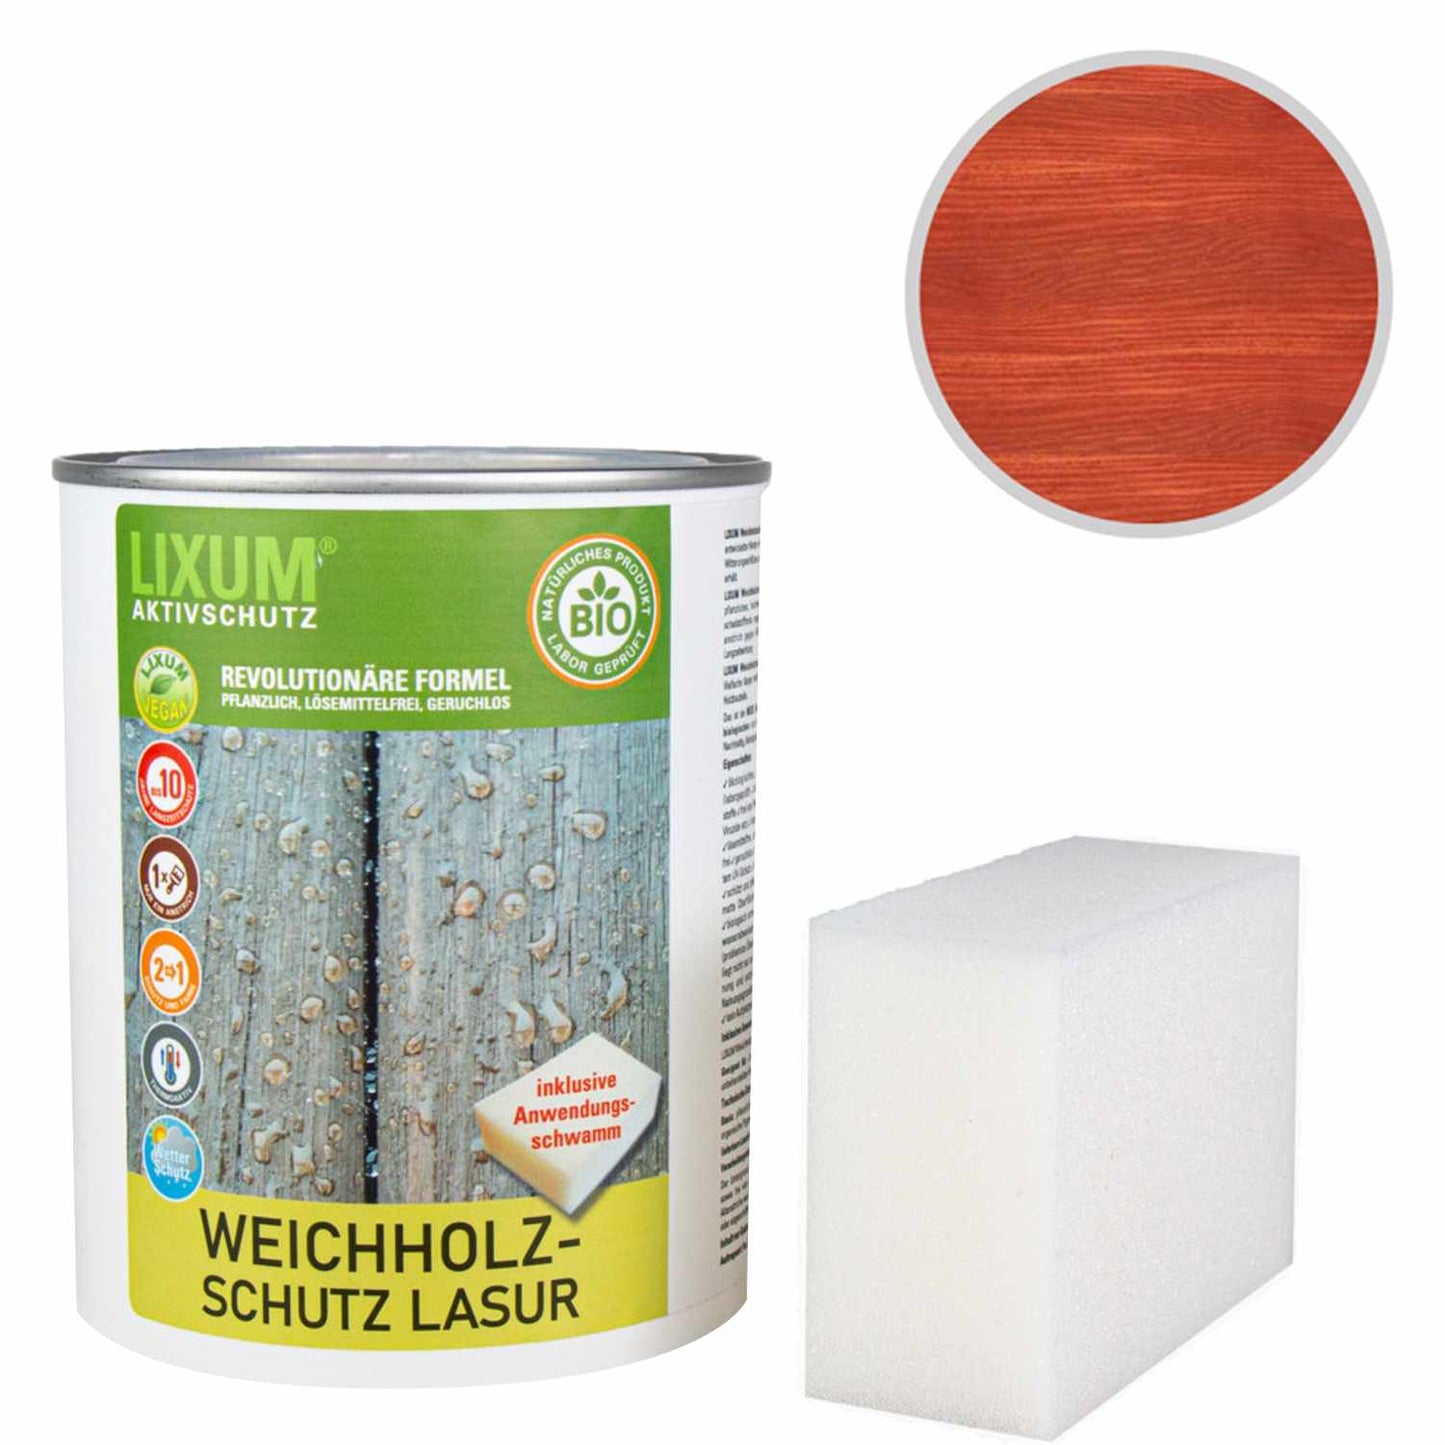 Protection de bois biologique Glaze de protection en bois souple - Spruce - Protection du bois et soins en bois à l'extérieur